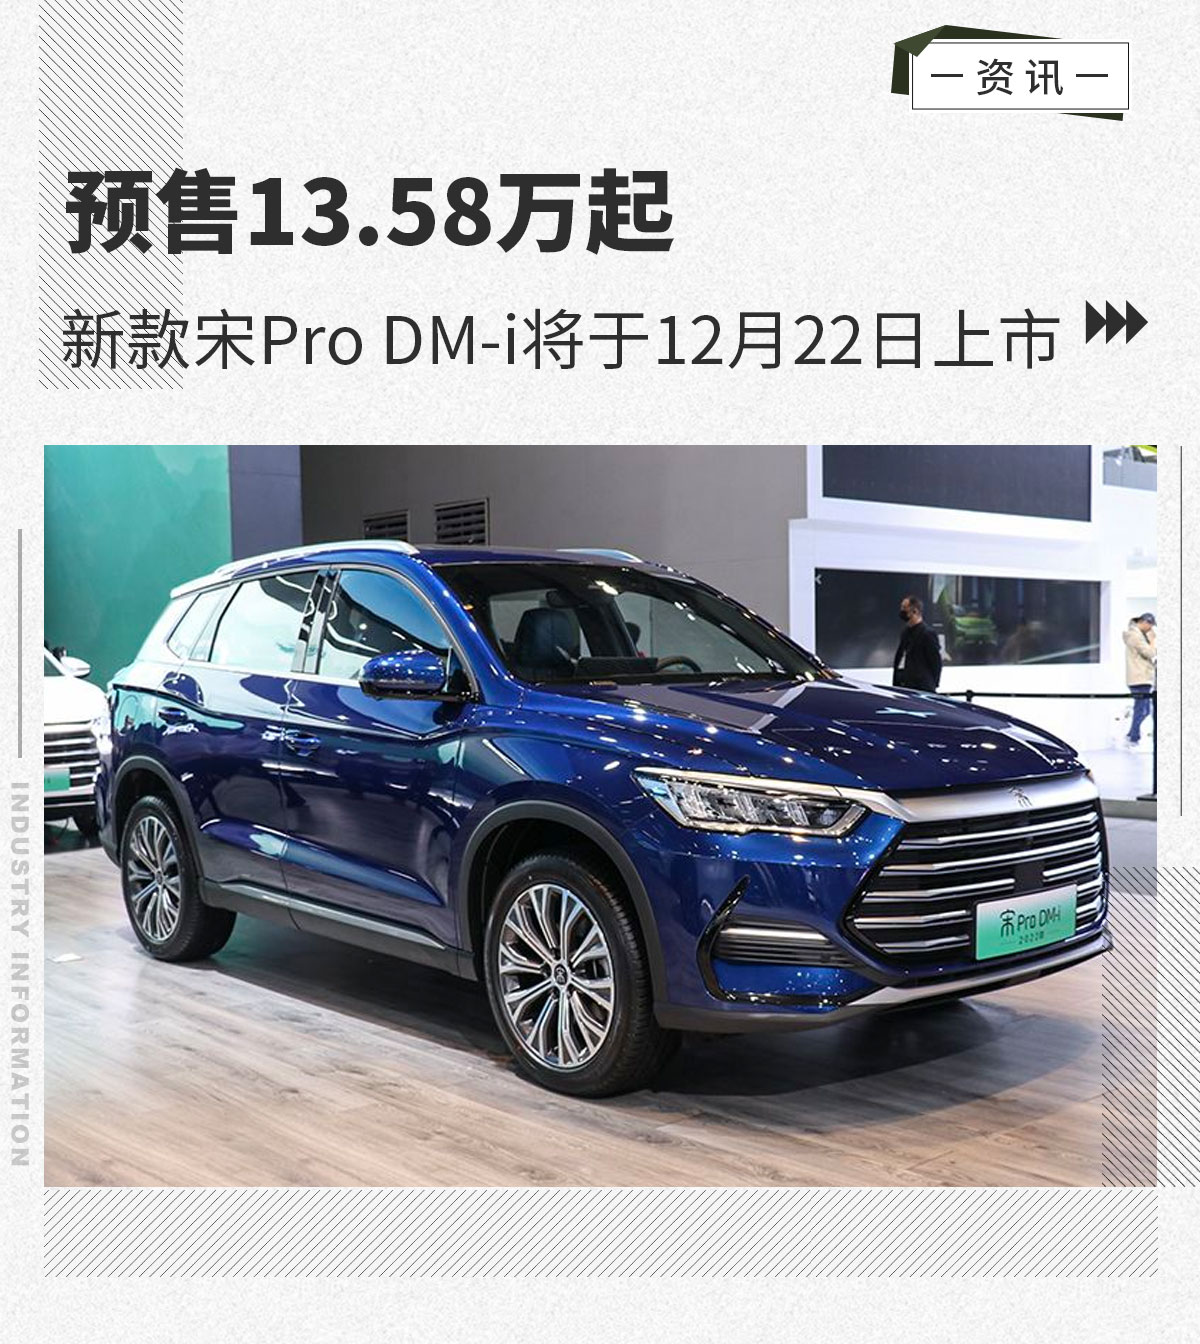 12月22日新款宋Pro DM-i将上市 预售13.58万起